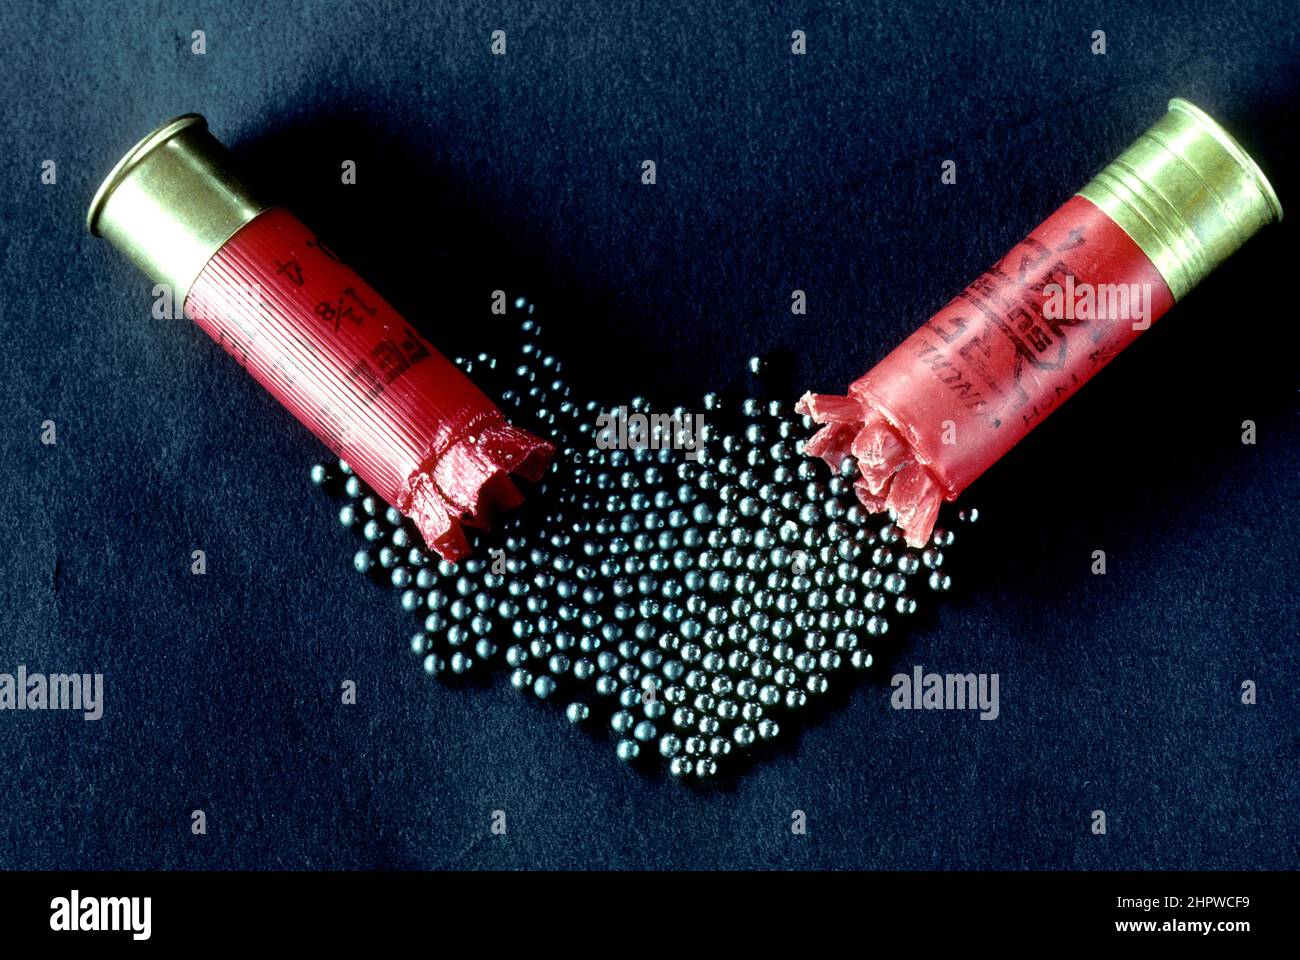 proyectiles de escopeta con inyección de acero no tóxico (izquierda) y inyección de plomo tóxico (derecha) Foto de stock